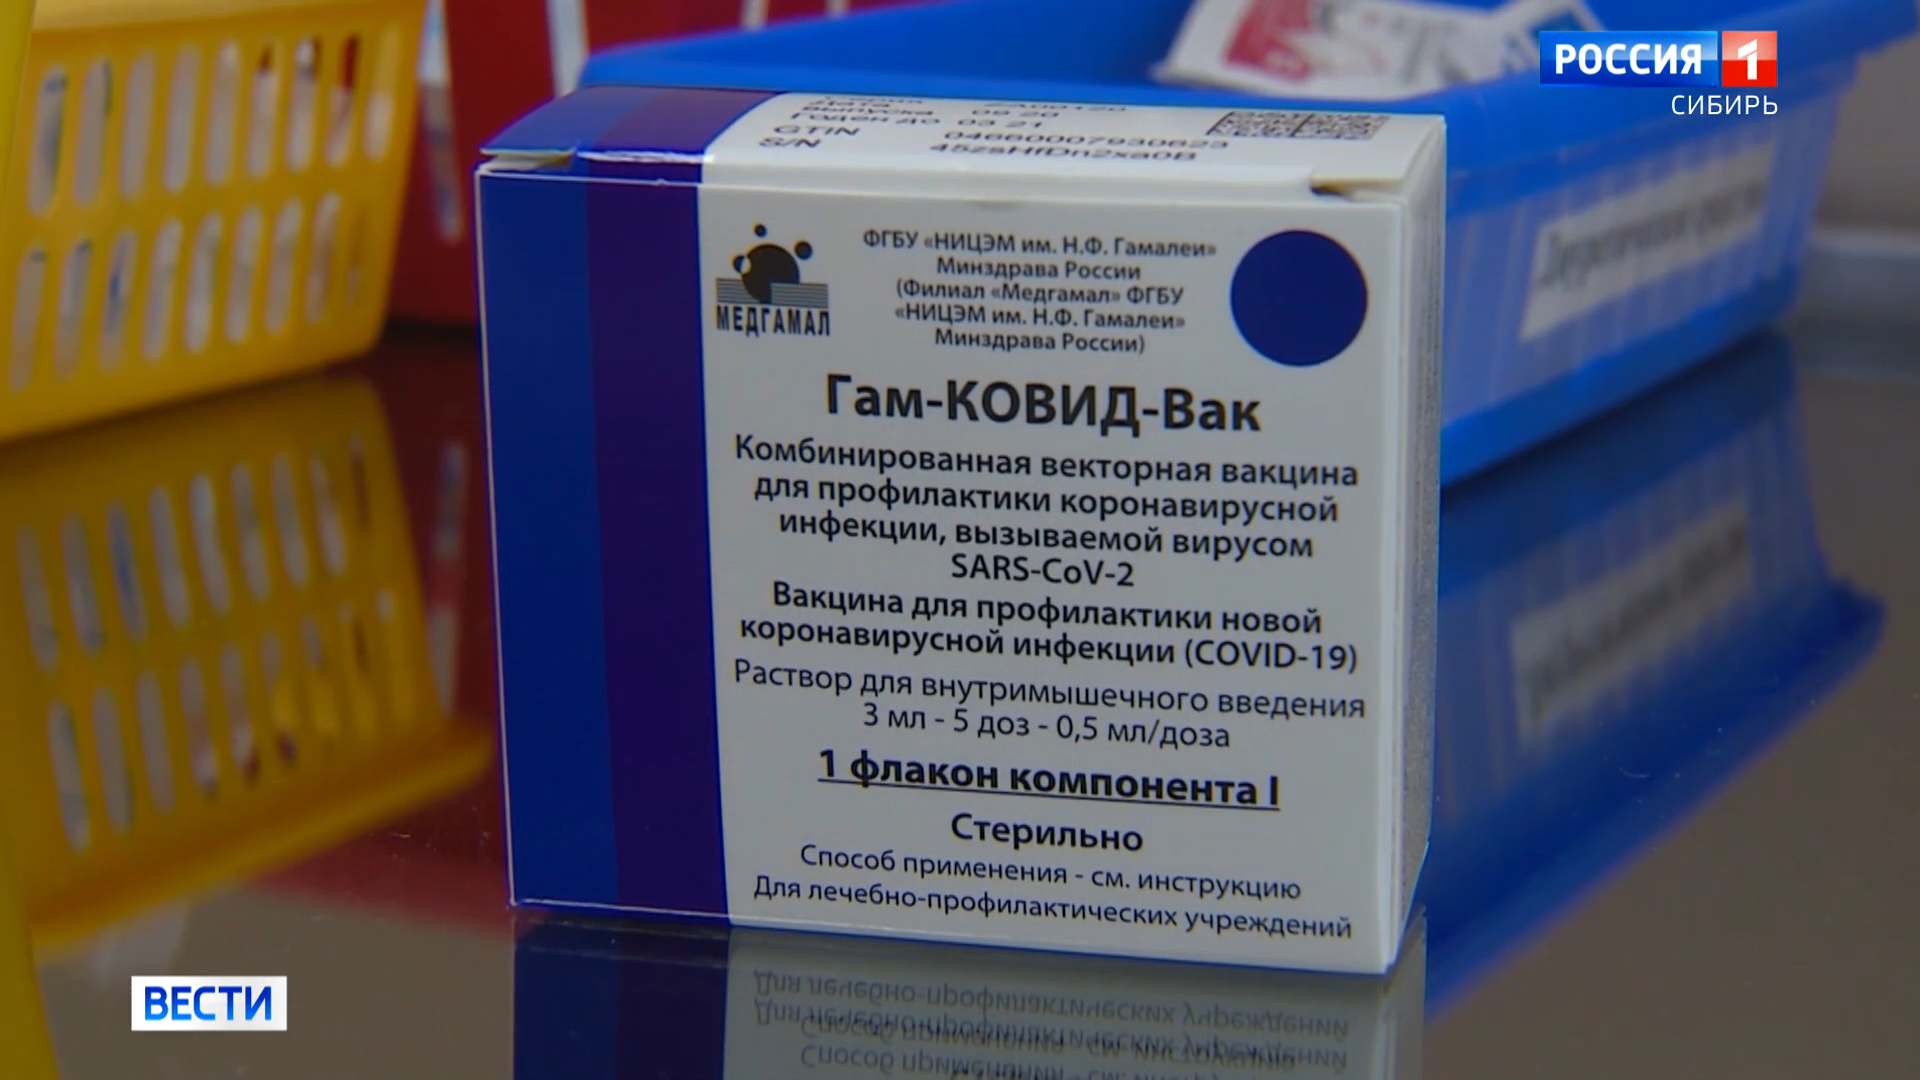 Масштабная прививочная кампания от коронавируса началась в регионах Сибири